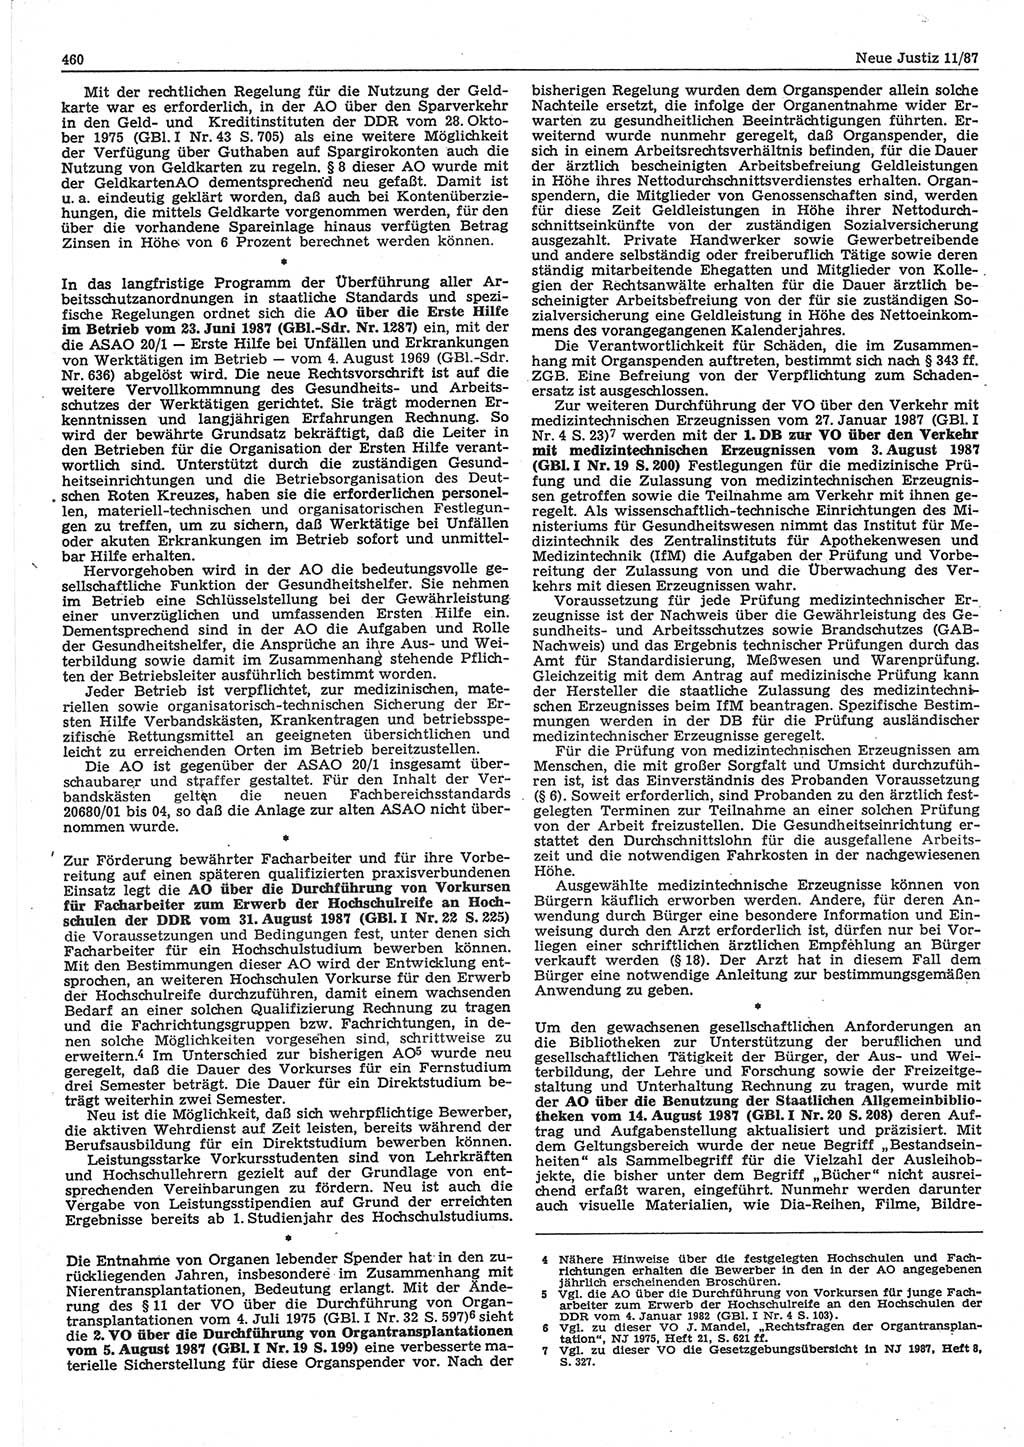 Neue Justiz (NJ), Zeitschrift für sozialistisches Recht und Gesetzlichkeit [Deutsche Demokratische Republik (DDR)], 41. Jahrgang 1987, Seite 460 (NJ DDR 1987, S. 460)